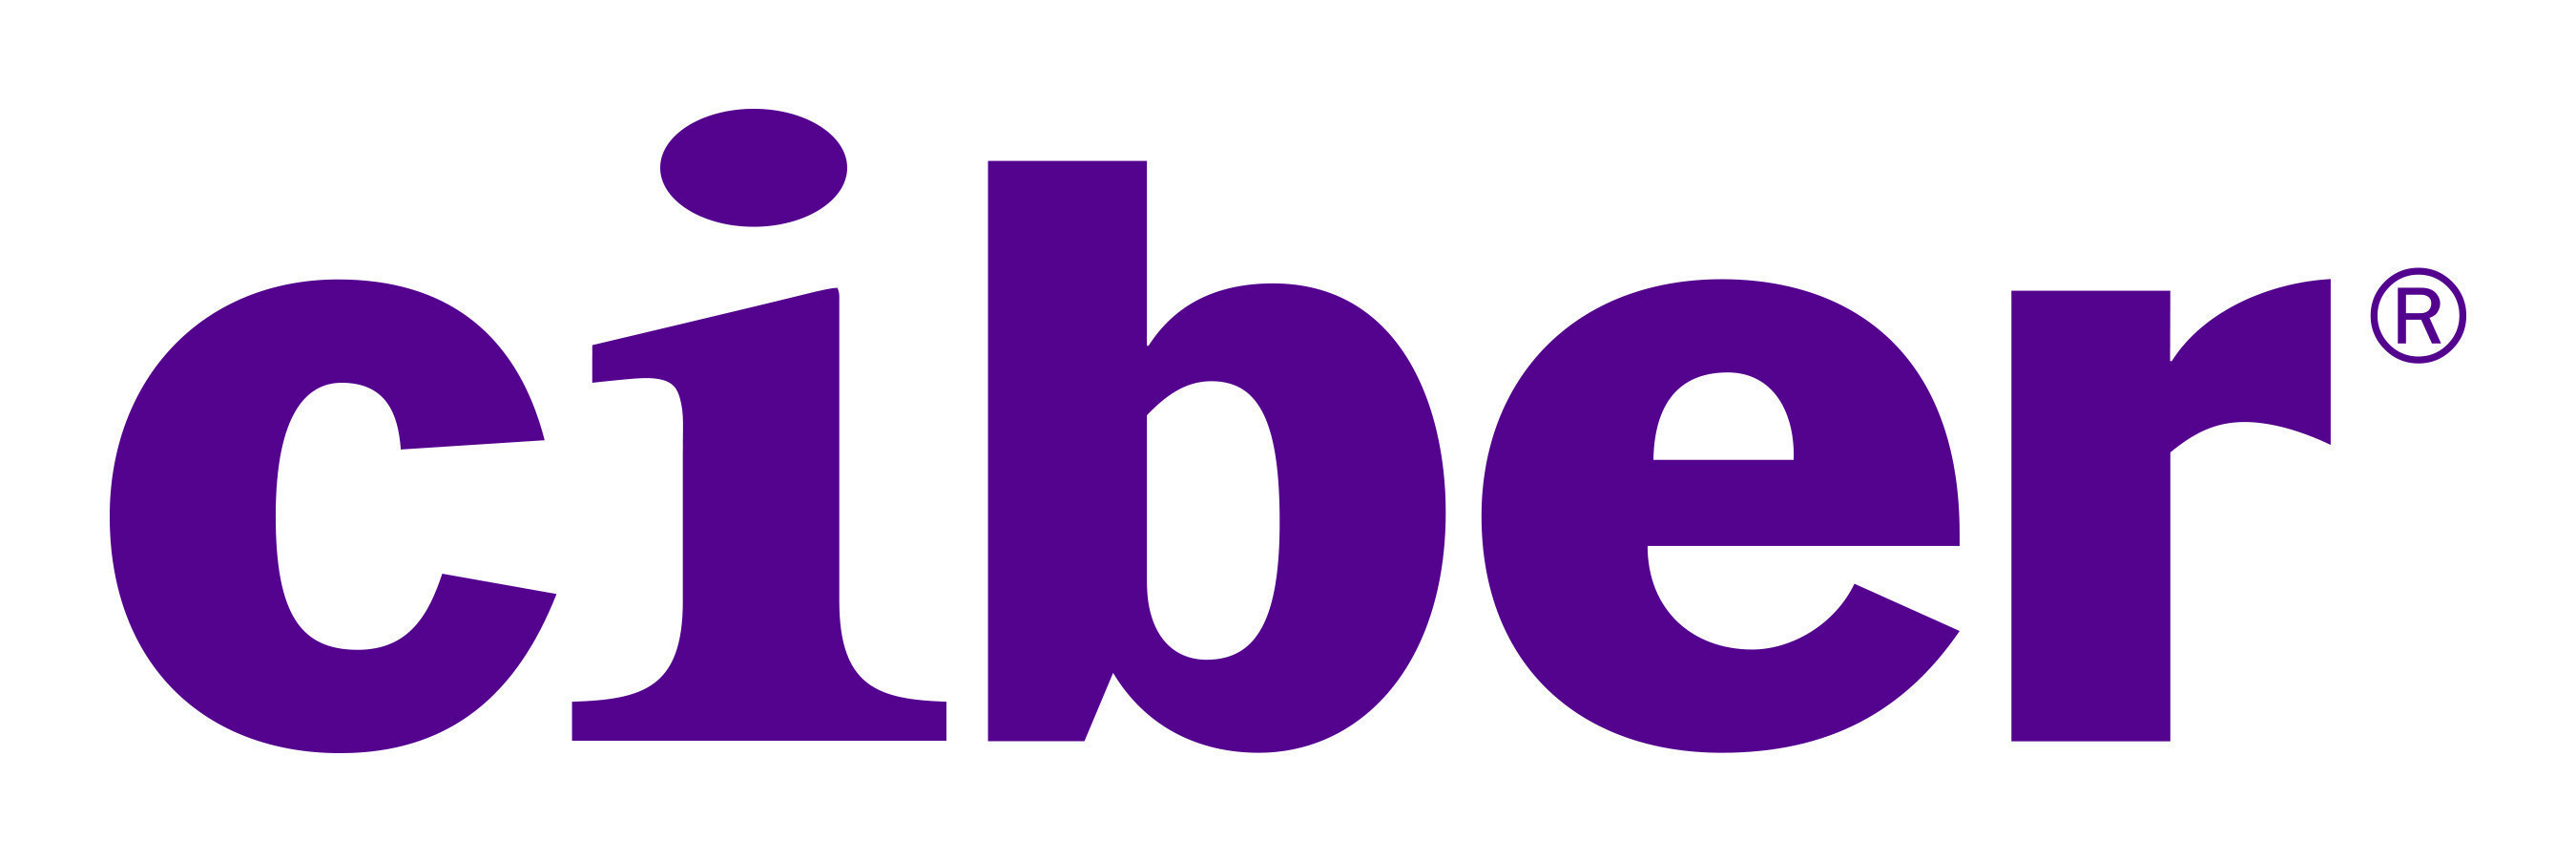 Ciber Logo